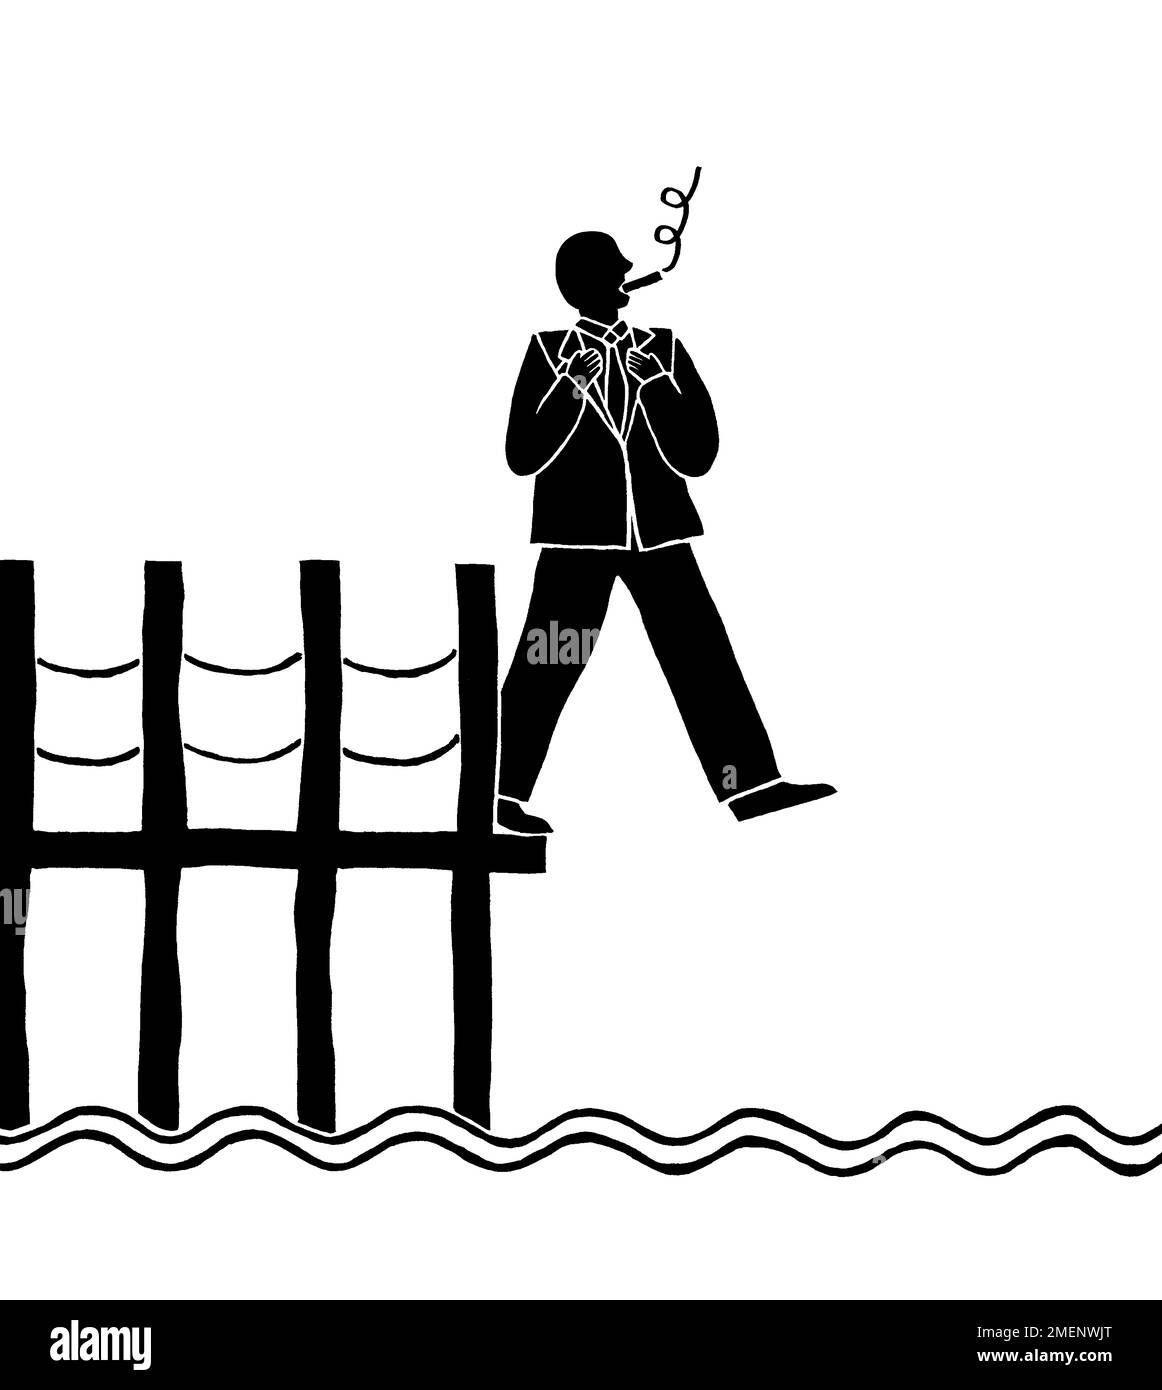 Illustrazione in bianco e nero di un uomo che cammina fuori da un molo in procinto di immergersi nell'acqua sottostante Foto Stock